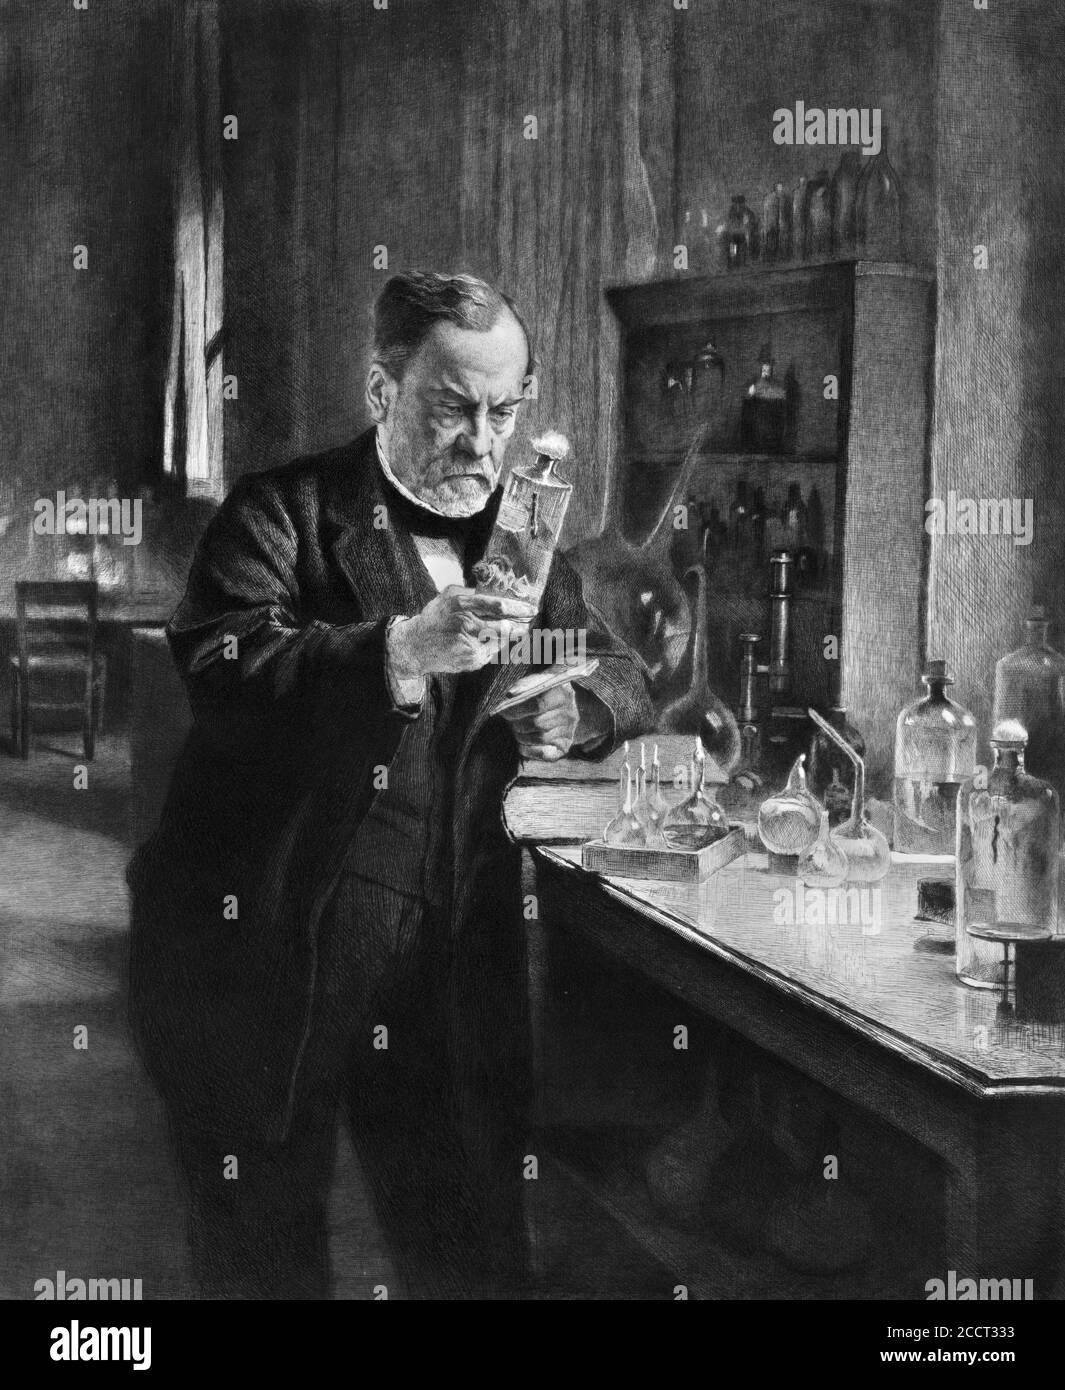 Porträt von Louis Pasteur (1822-1895). Pasteur war ein französischer Biologe, Mikrobiologe und Chemiker, der für seine Entdeckungen über die Prinzipien der Impfung, mikrobieller Fermentation und Pasteurisierung bekannt war. Radierung von Flameny nach einem Kunstwerk von Edelfeldt, 1892 Stockfoto